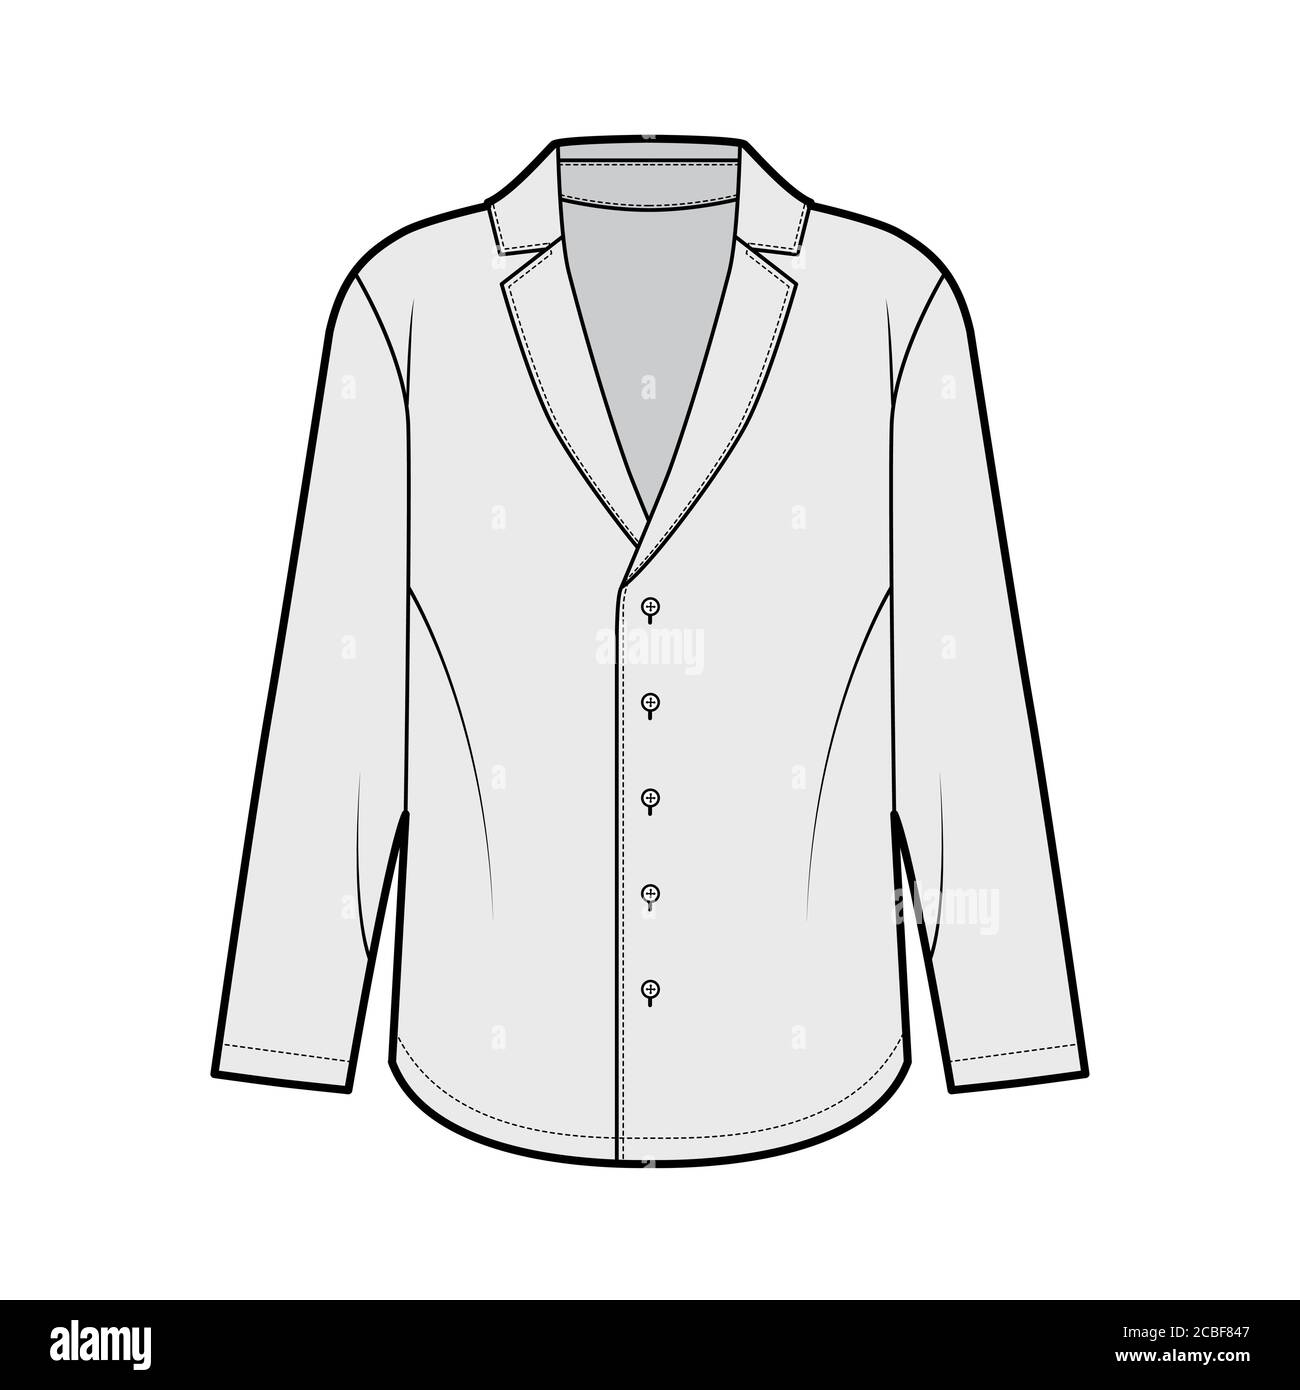 Shirt im Pyjama-Stil technische Mode-Illustration mit lockerer Silhouette, spitzem Kragen, Knopfverschluss vorne, langen Ärmeln. Flache Bekleidungsvorlage vorne grau Farbe. Damen Herren Unisex-Shirt Stock Vektor